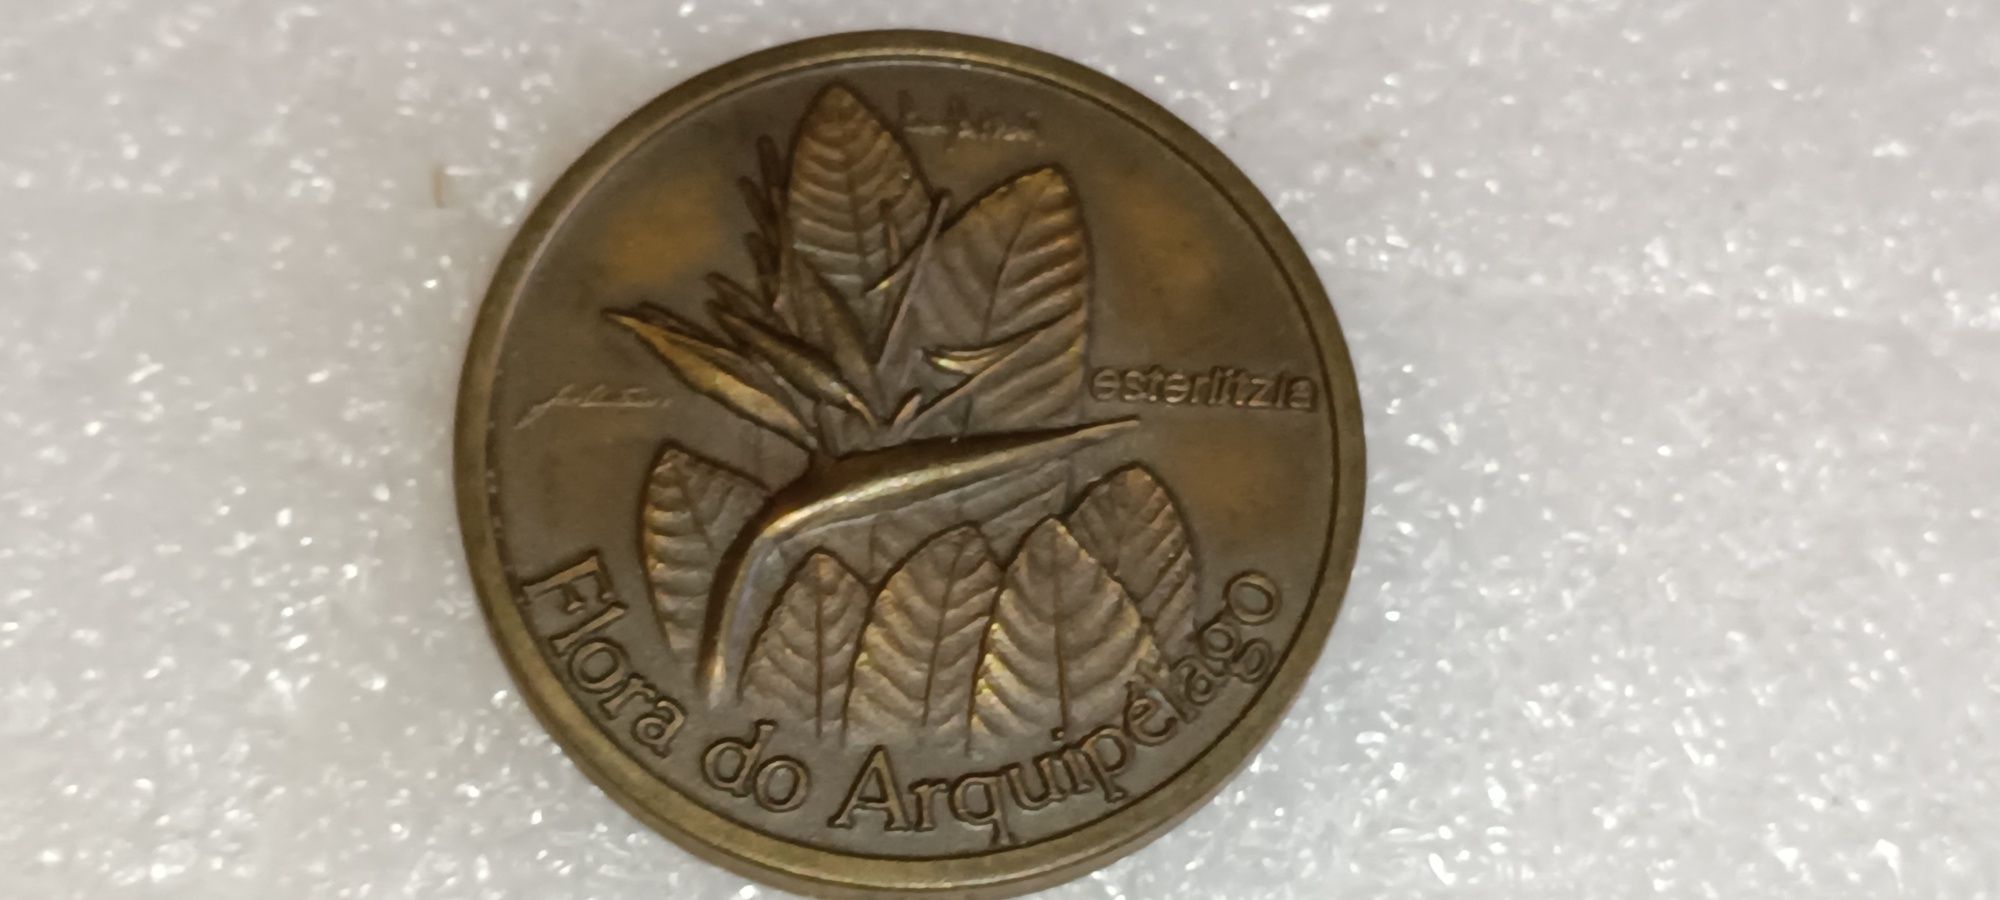 Rara Medalha Flora do Arquipélago Esterlitzia